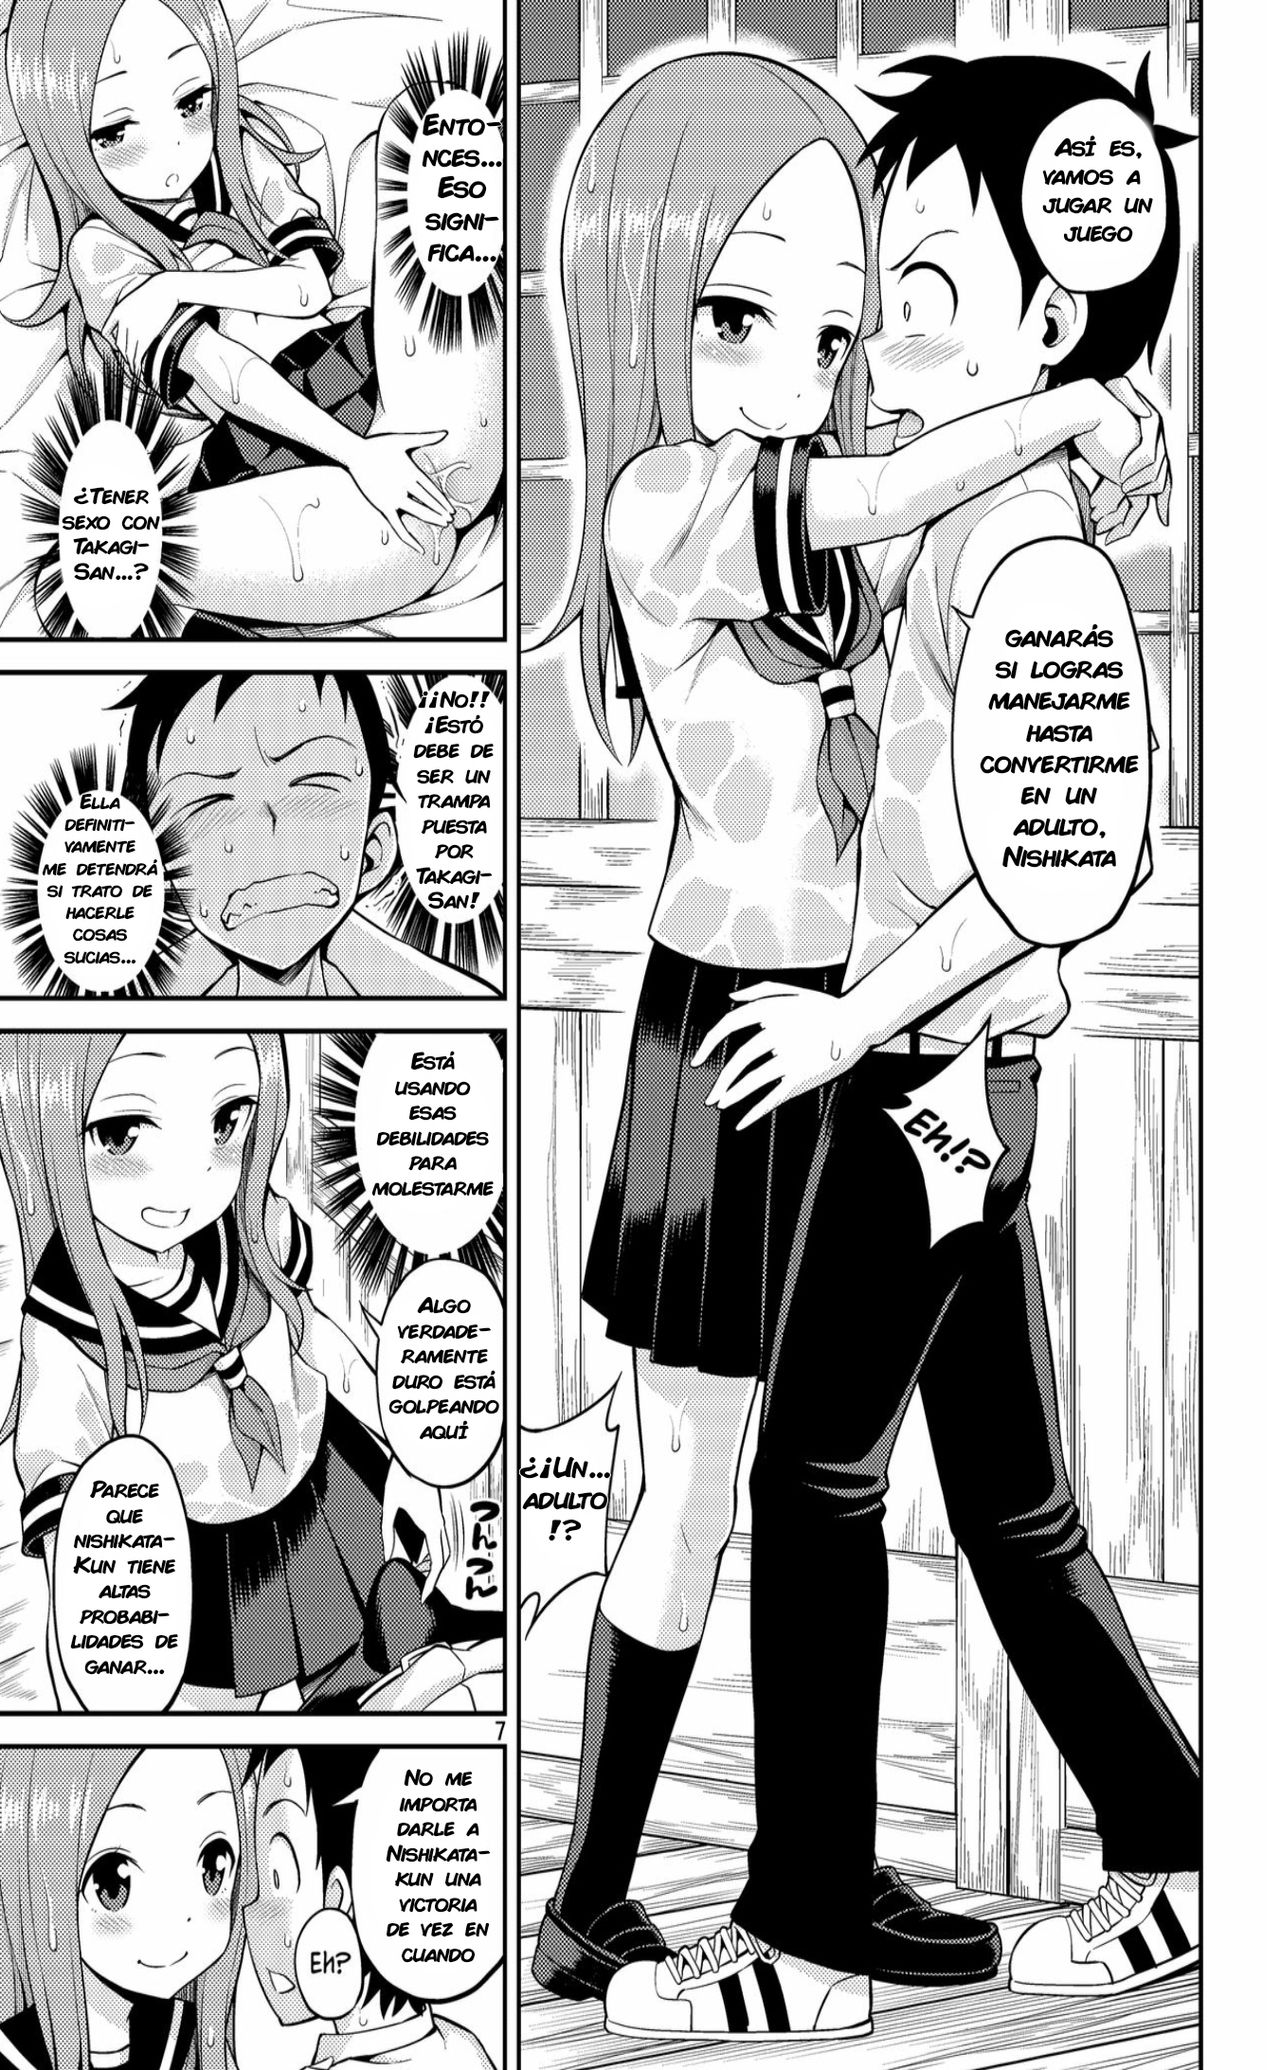 Comics porno de takagi san